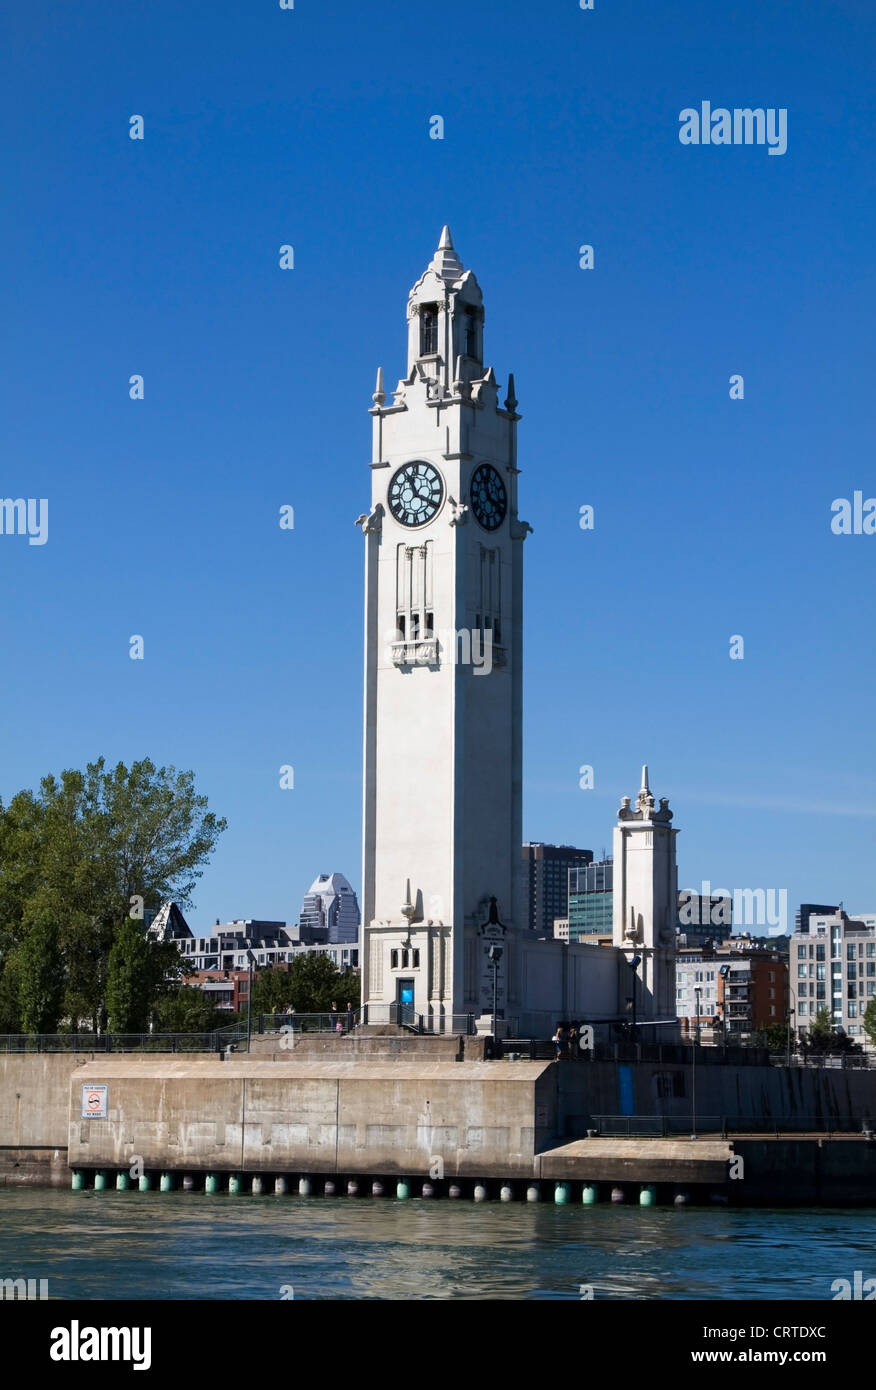 Tour de l'horloge de montréal Banque de photographies et d'images à haute  résolution - Alamy